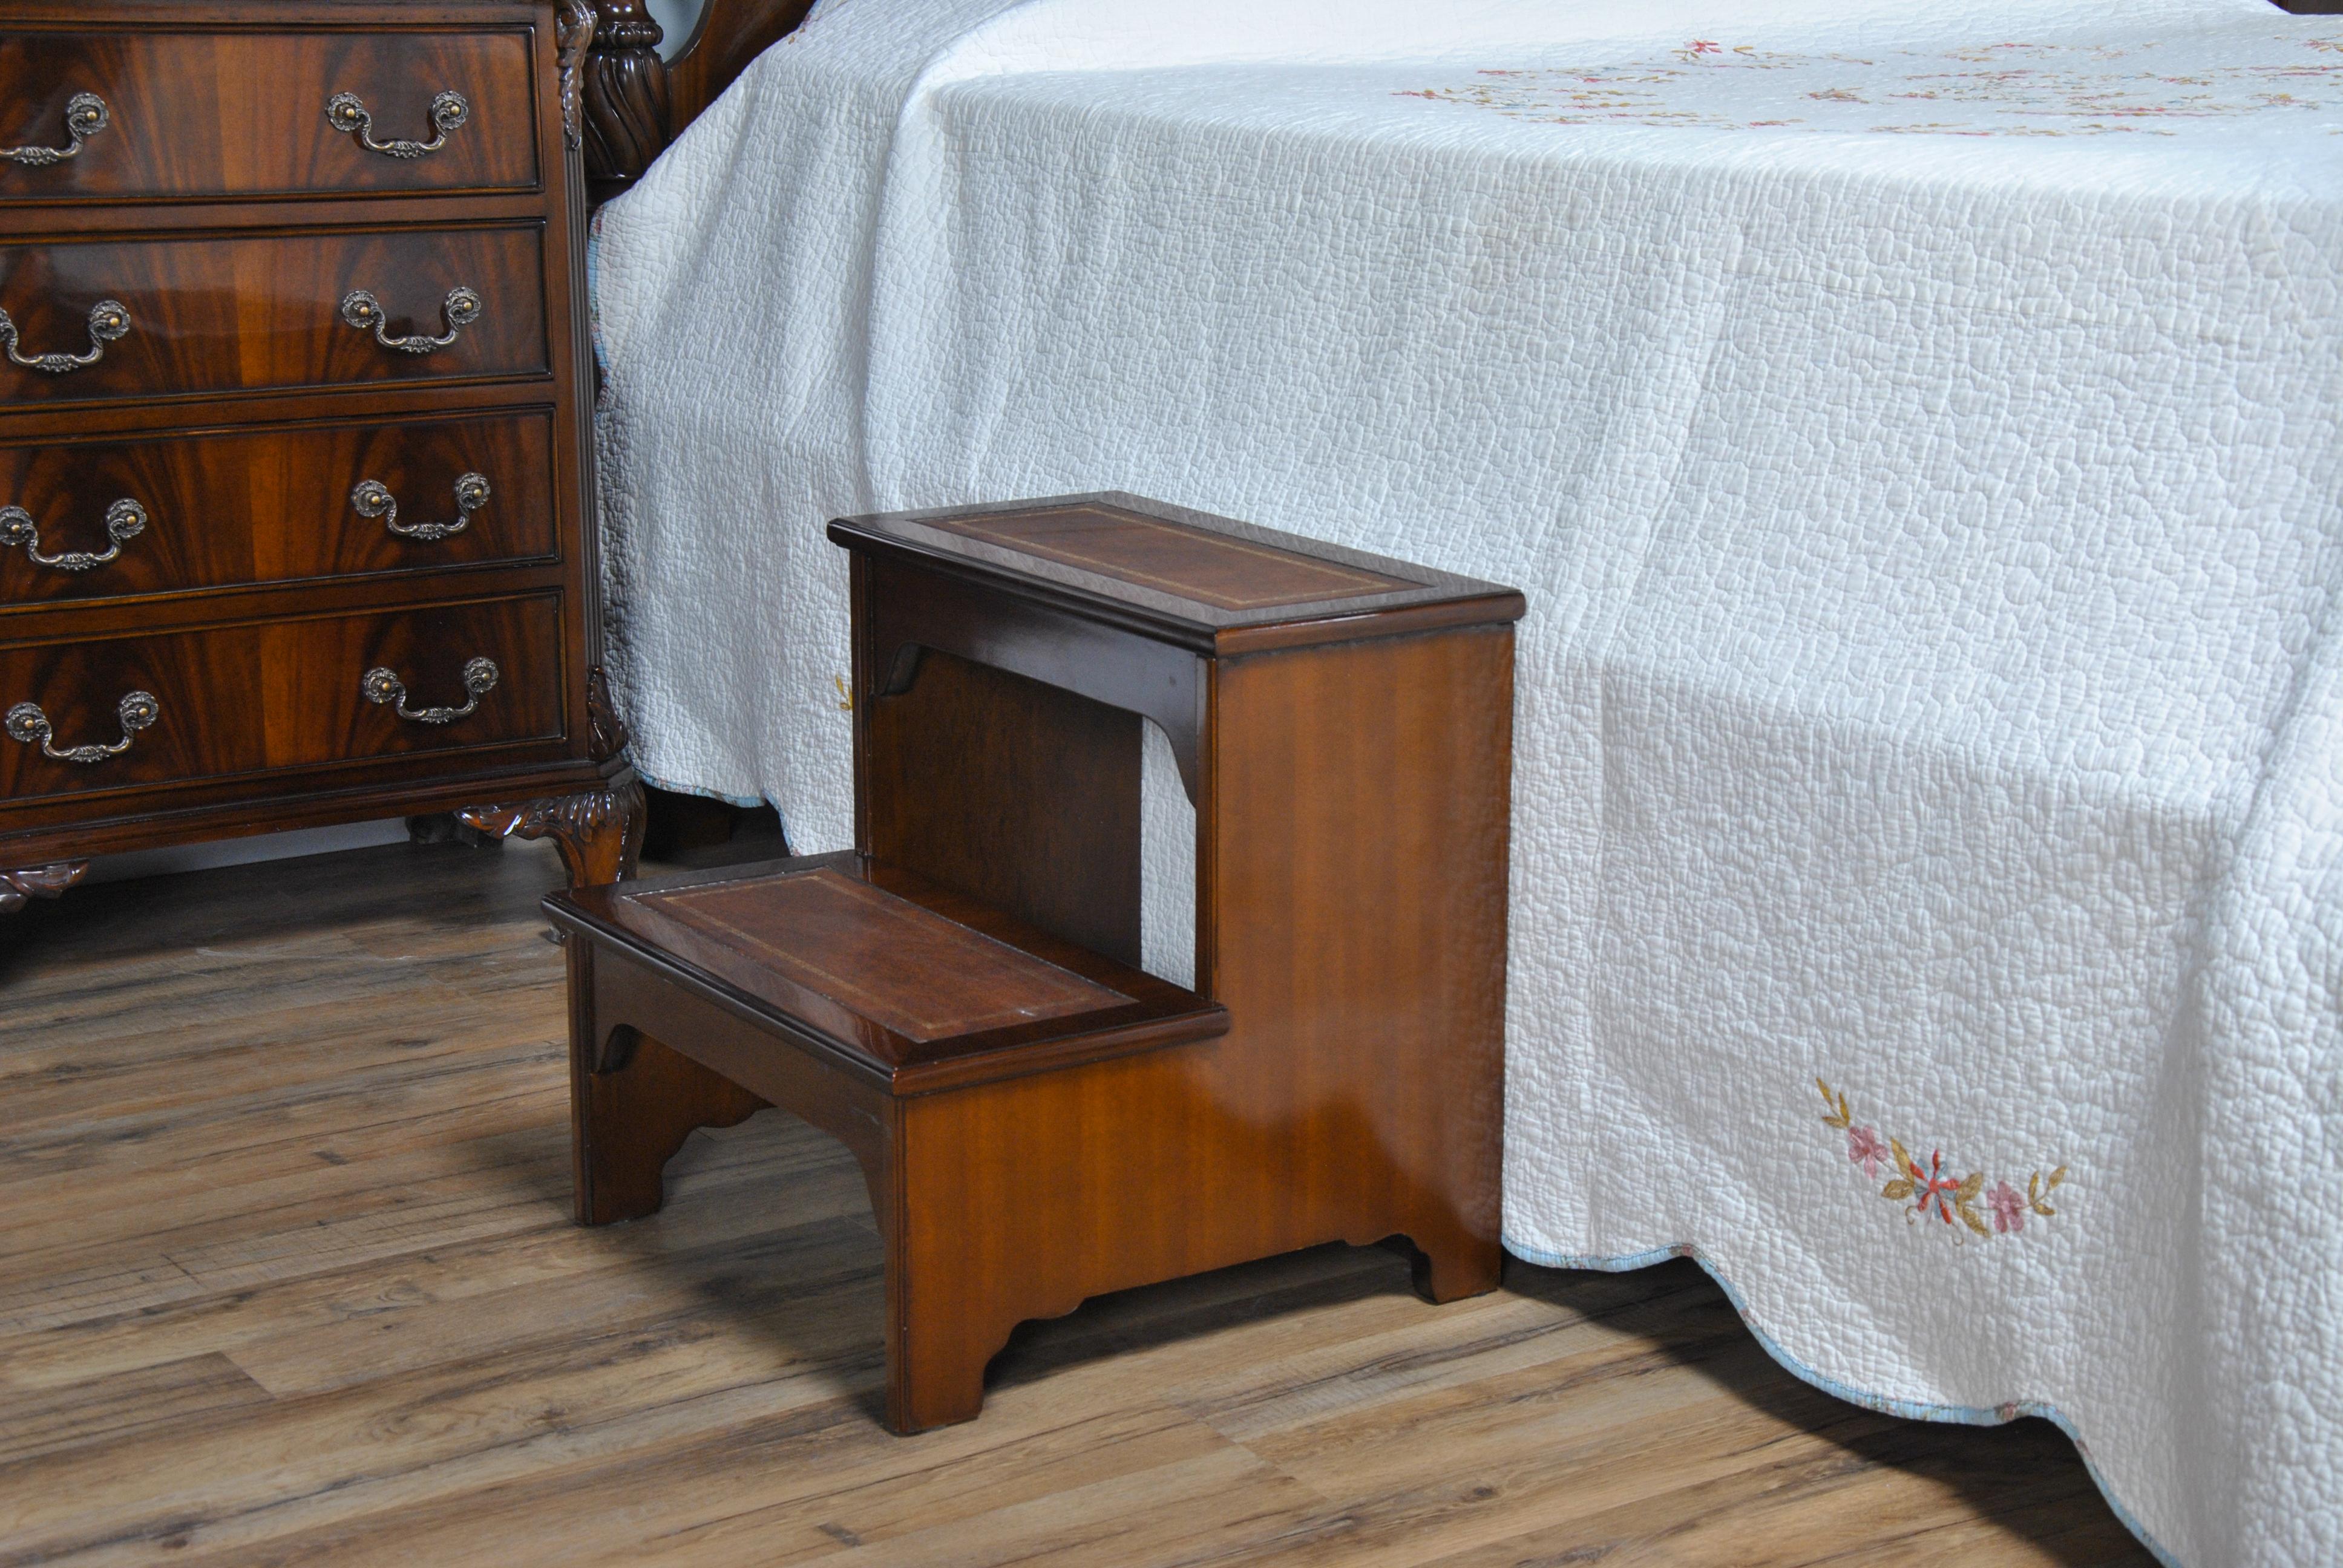 Ces marches de lit en cuir se caractérisent par une construction robuste, des marches en cuir véritable pleine fleur ainsi qu'un design simple qui leur permet de s'adapter à tous les styles de lit. Idéal pour faciliter l'entrée dans les lits